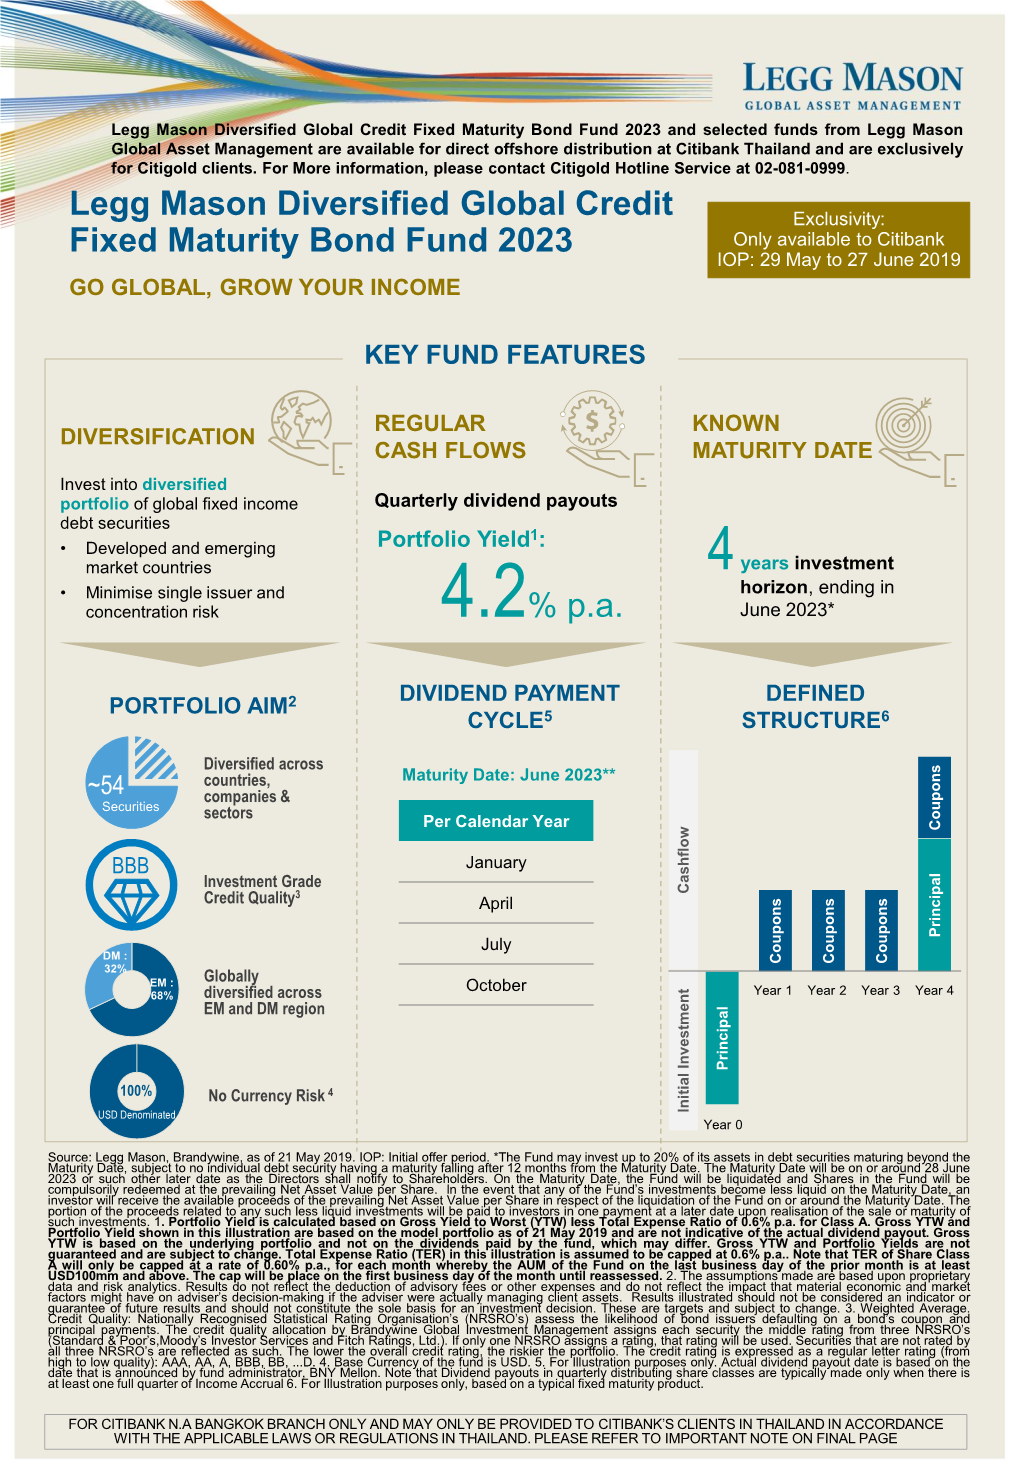 Legg Mason Diversified Global Credit Fixed Maturity Bond Fund